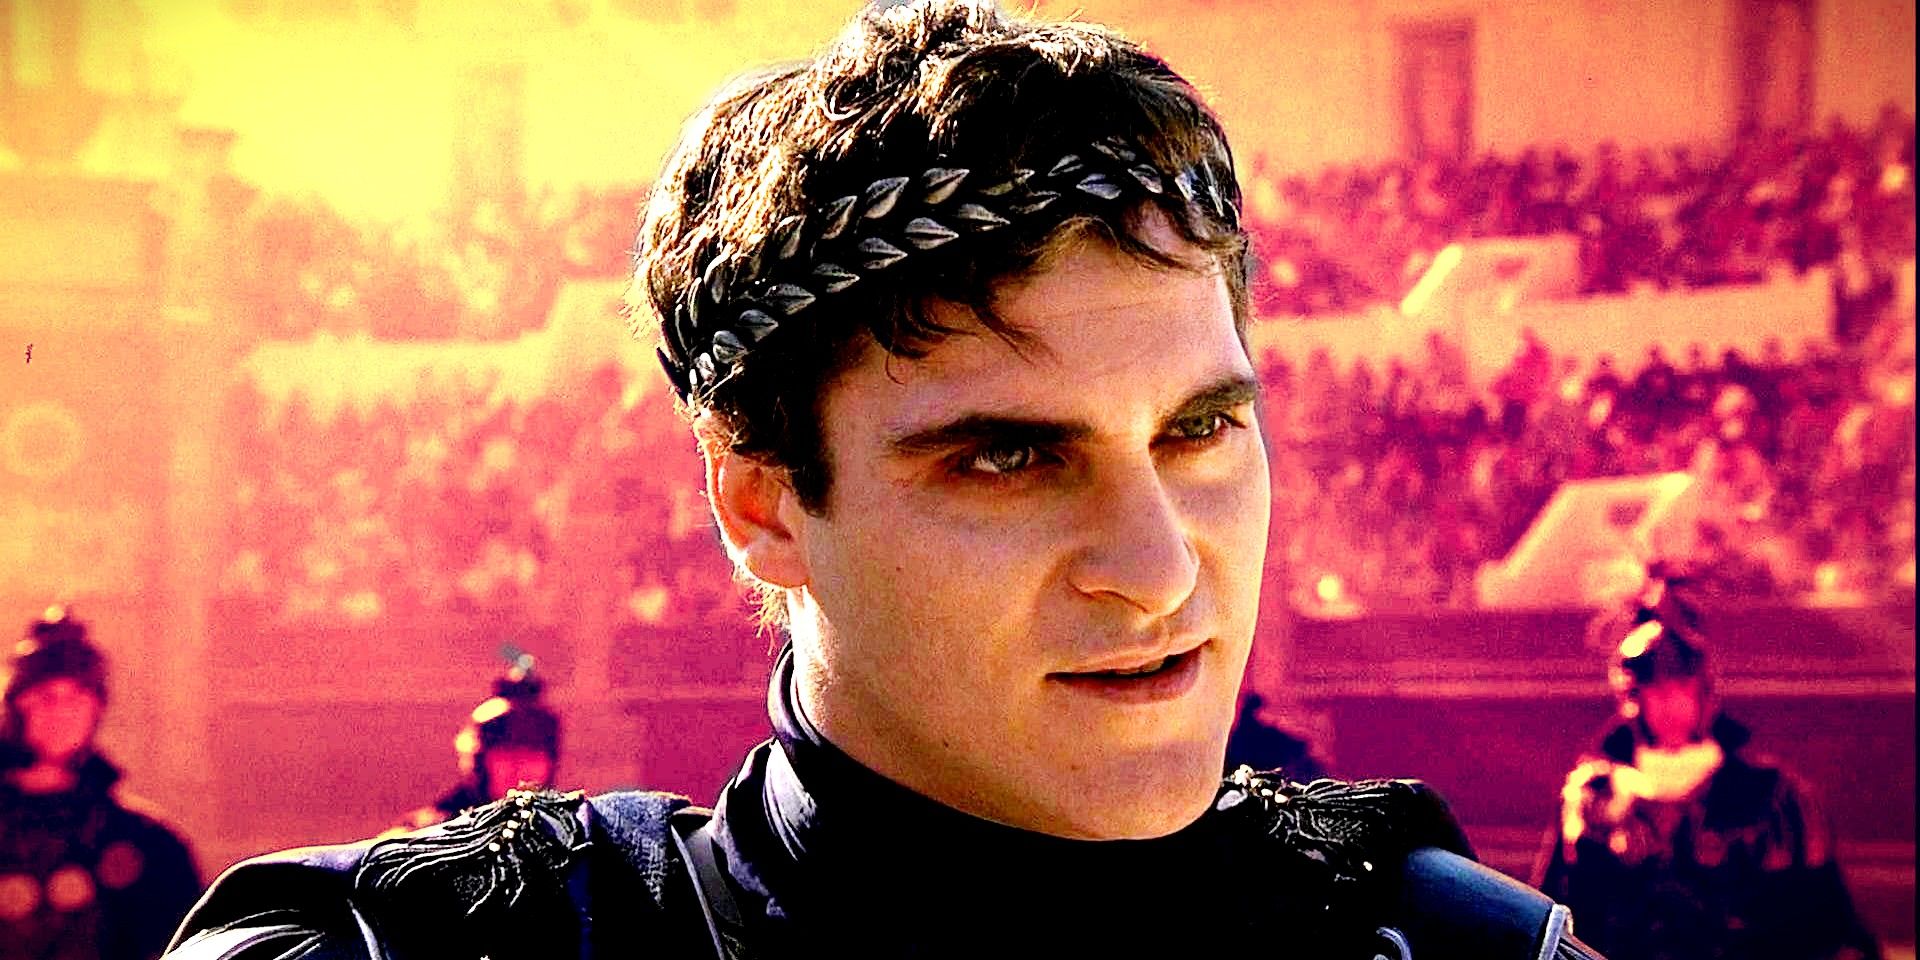 El director de Gladiator, Ridley Scott, revela su versión del villano de Joaquin Phoenix 23 años después